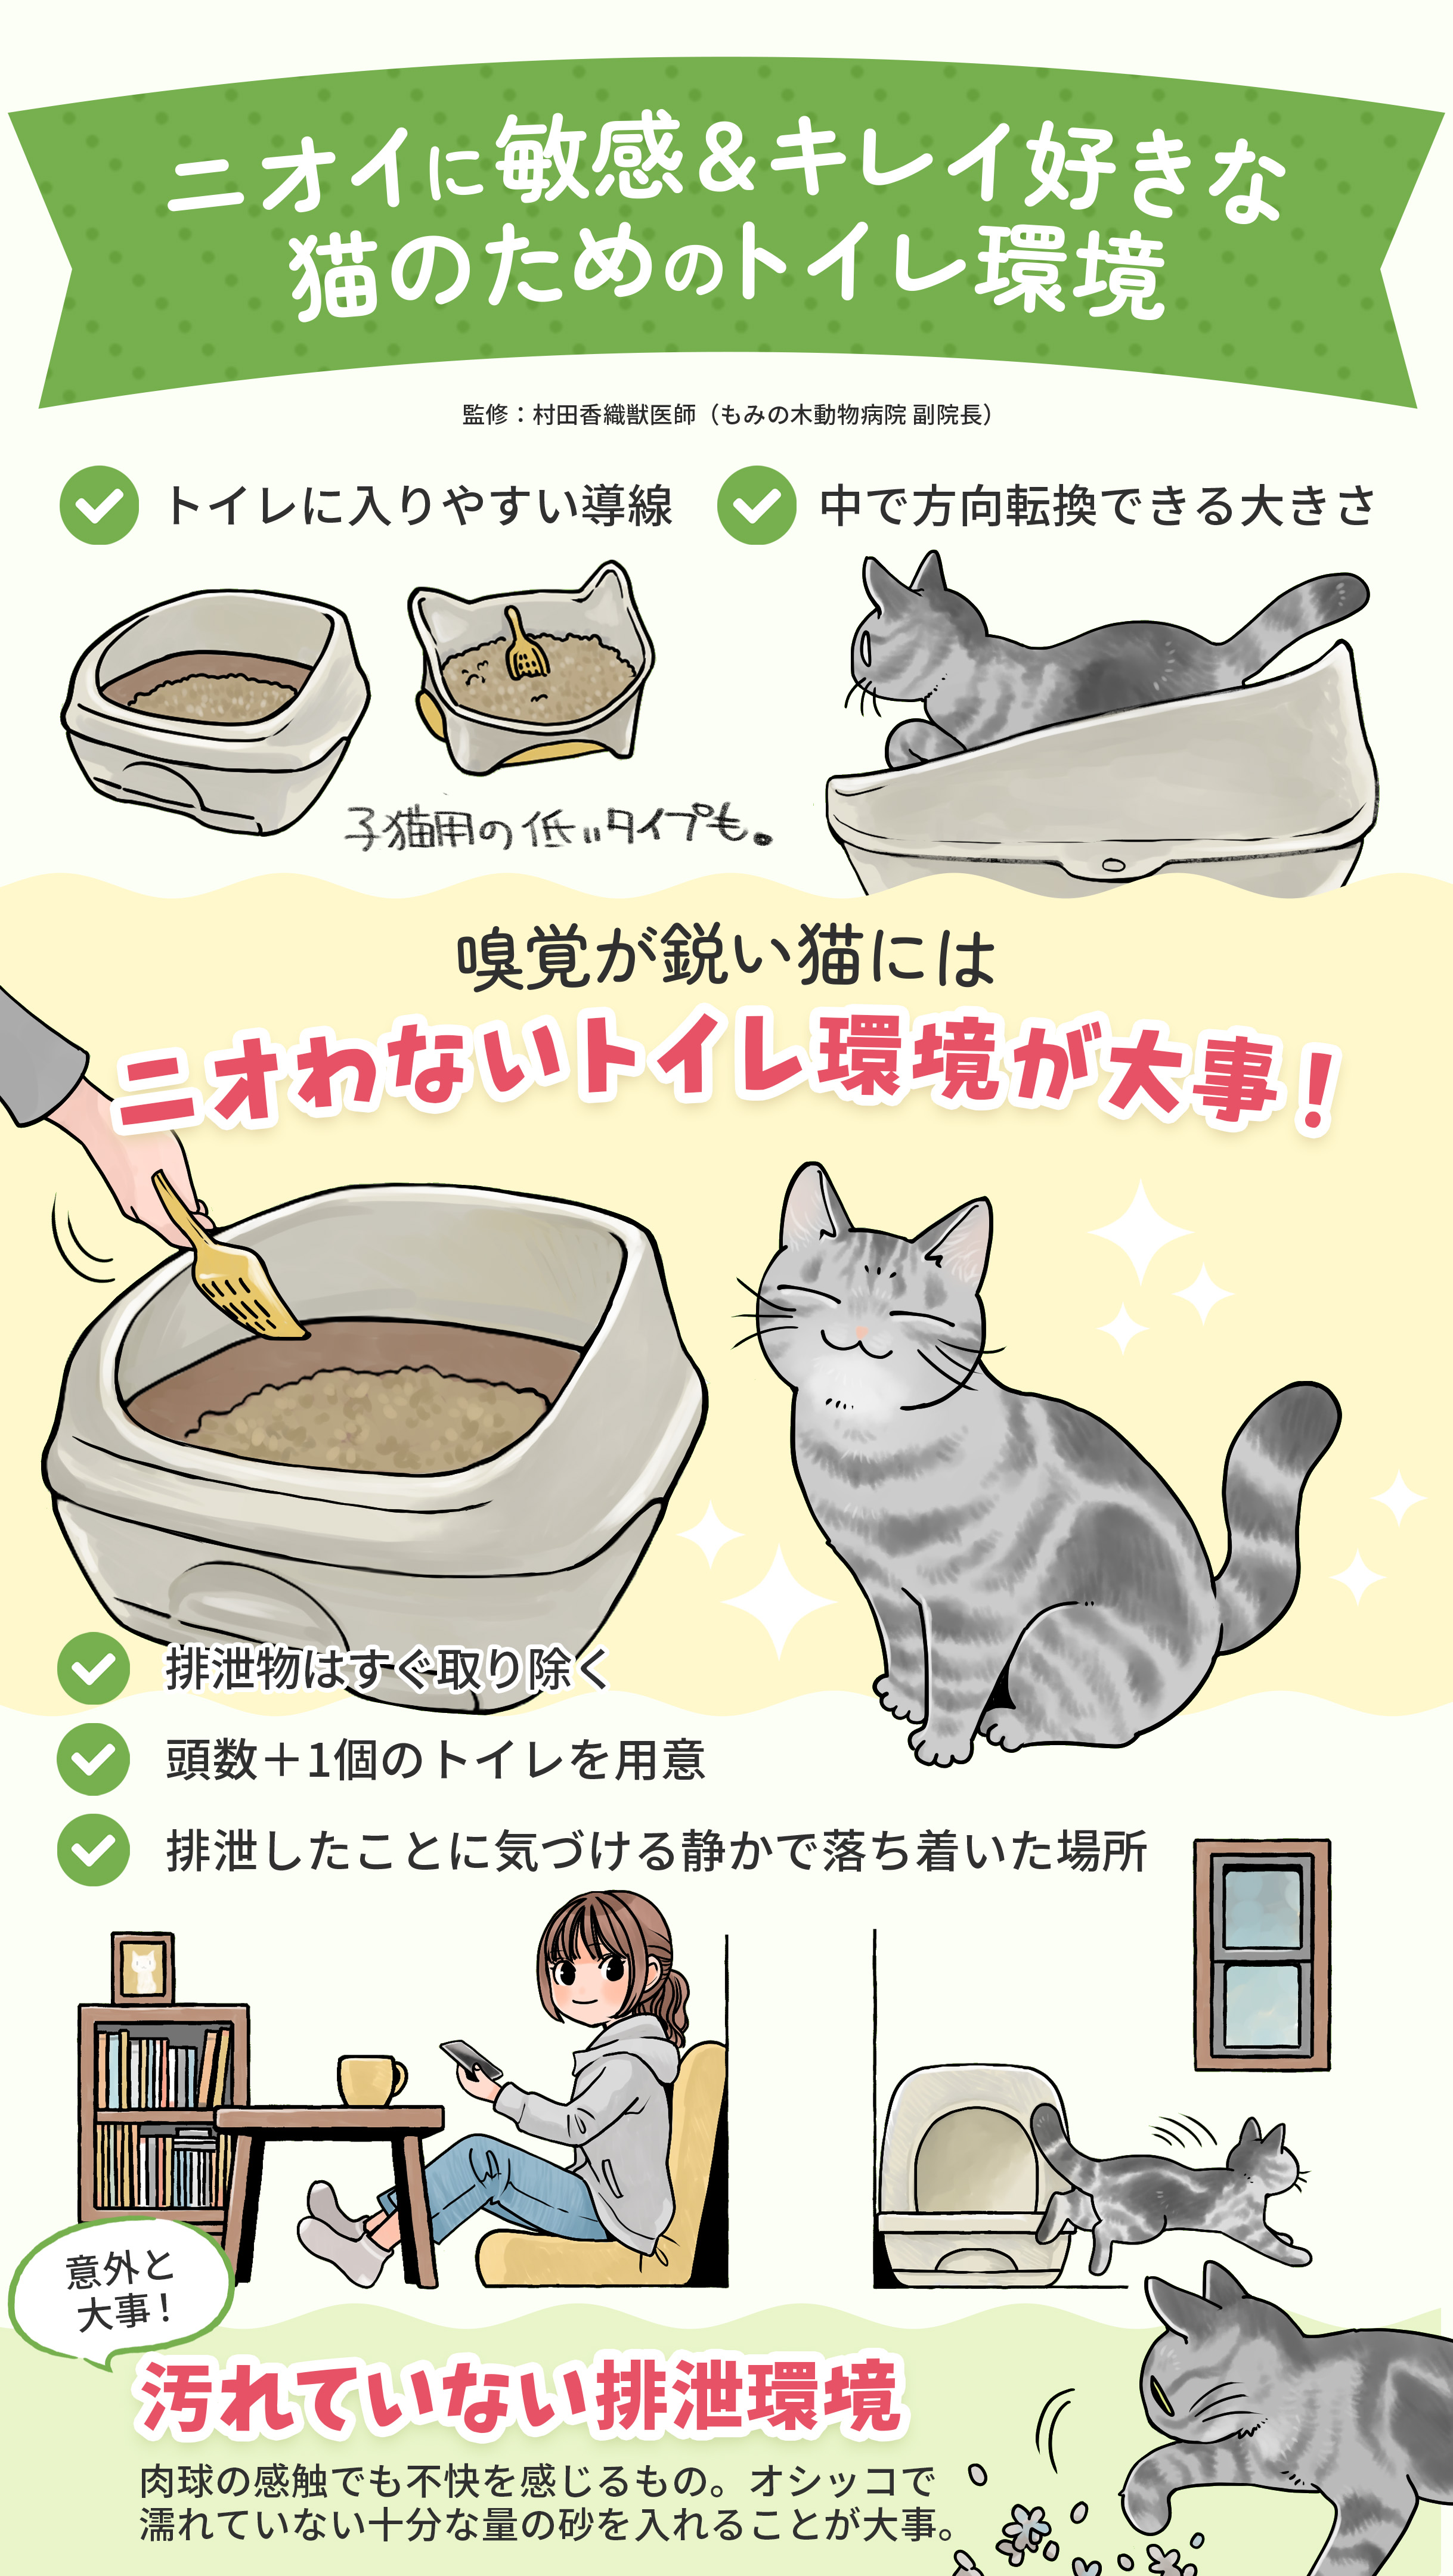 ニオイに敏感でキレイ好きな猫ちゃんのために、猫トイレ選びは大事。 「ニオわないこと」「排泄スペースが汚れにくいこと」に気をつけて購入しましょう。